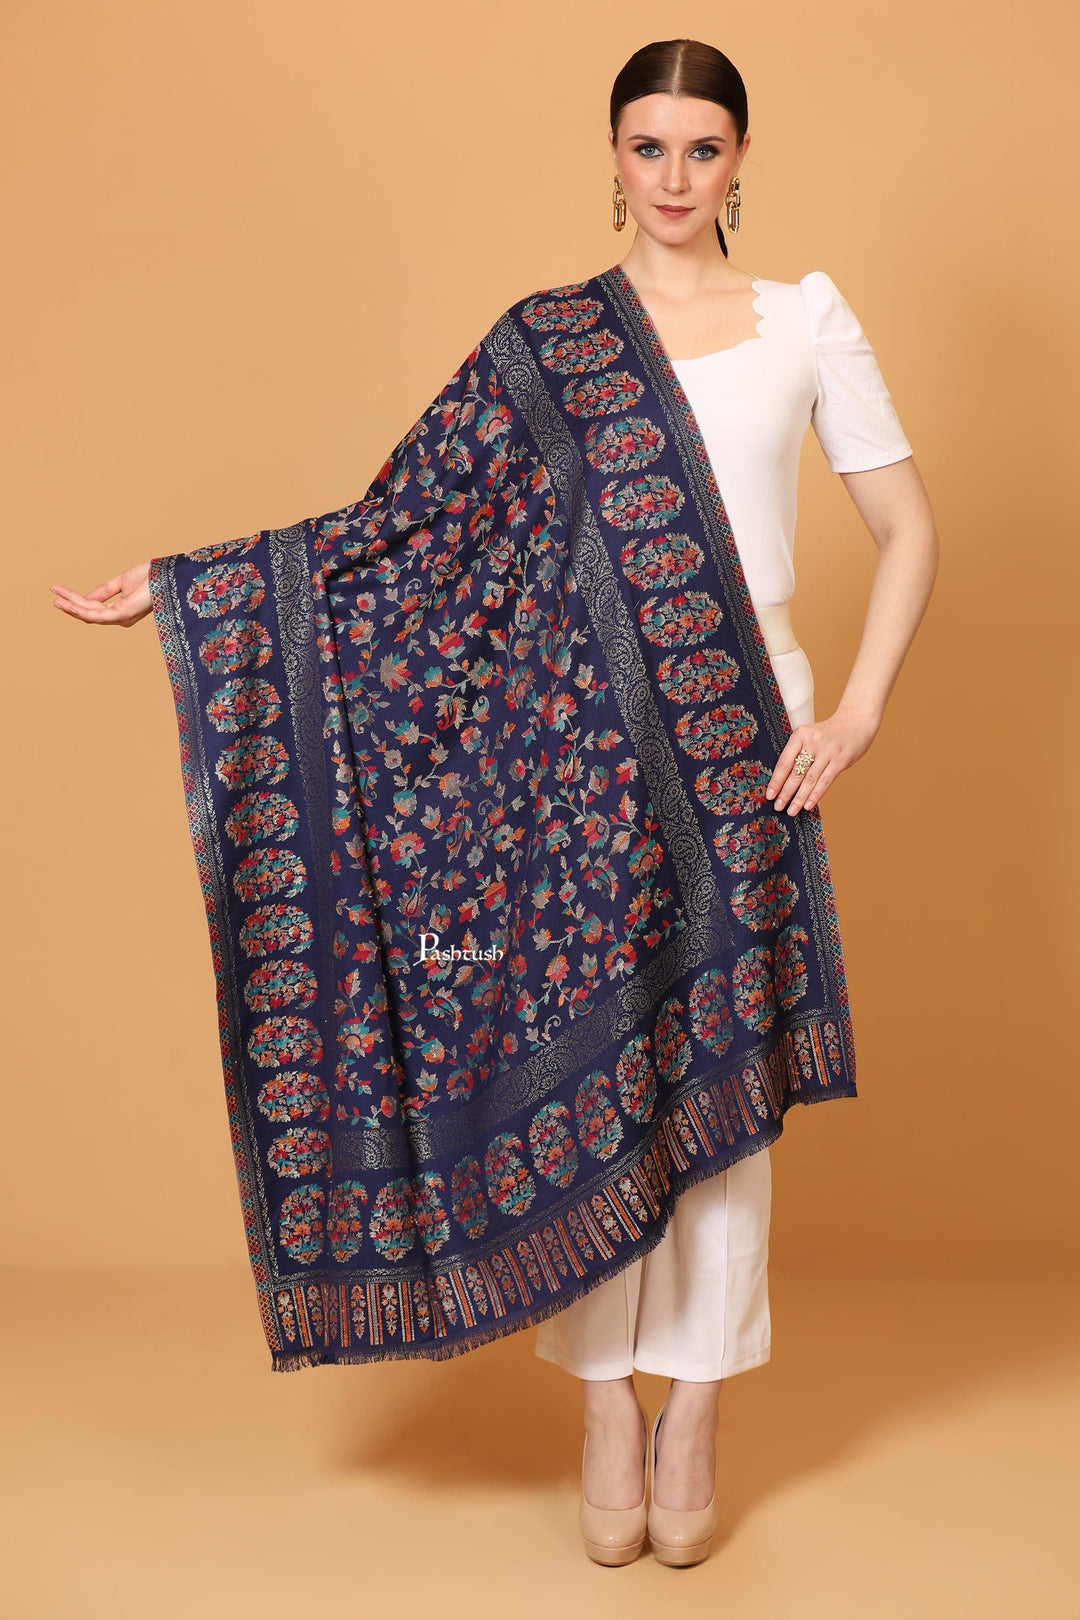 Pashtush India Womens Shawls Pashtush womens Faux Pashmina shawl, Woven Paisely design, Blue